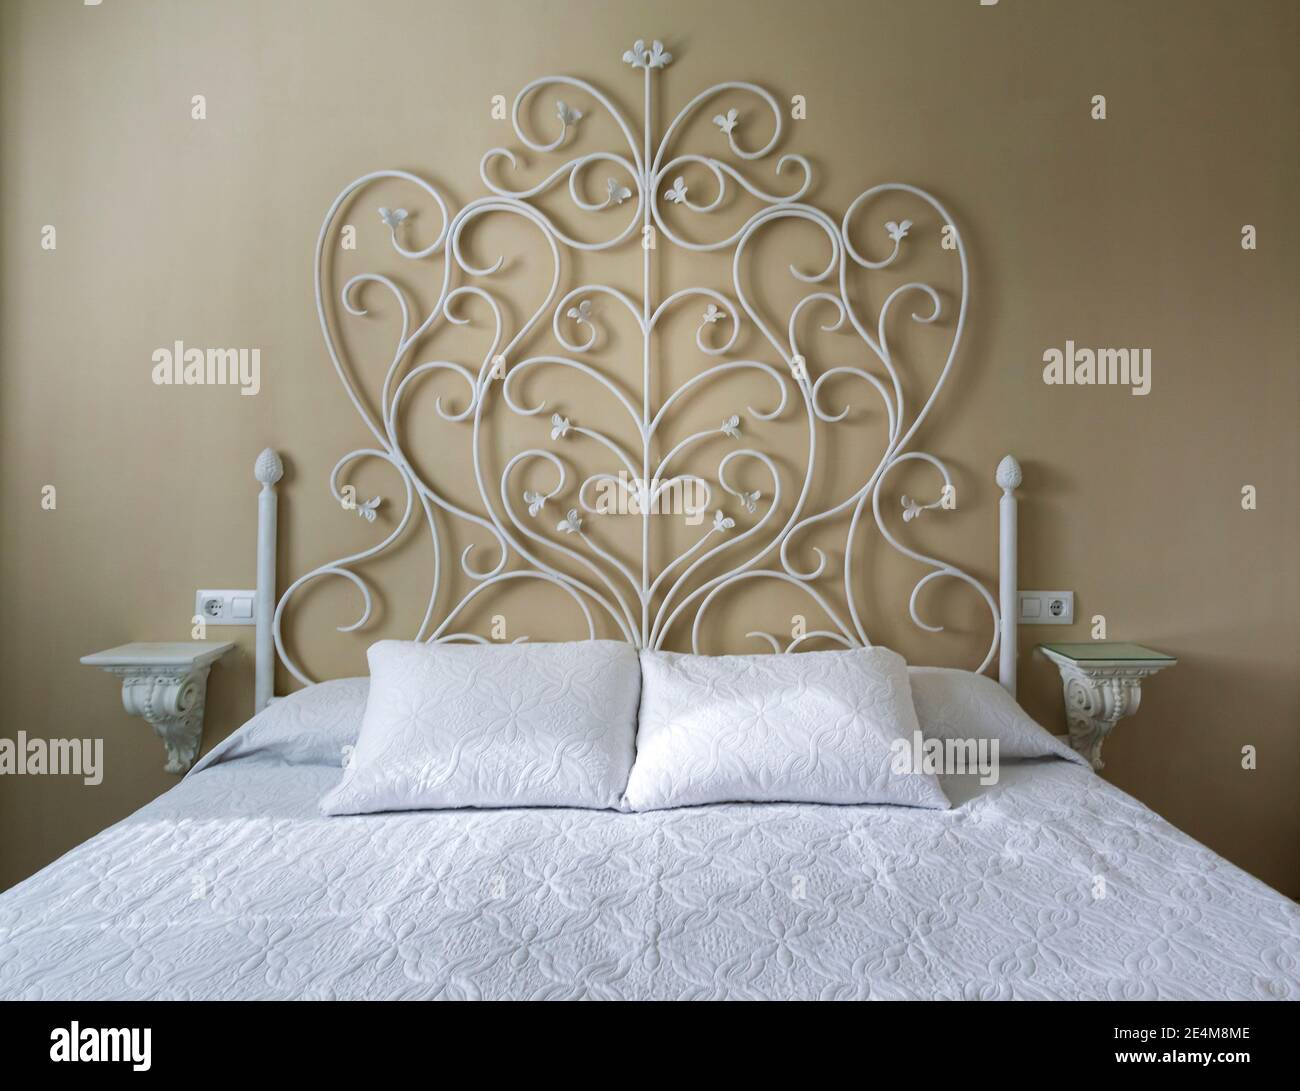 Tête de lit en fer forgé blanc dans la chambre Photo Stock - Alamy